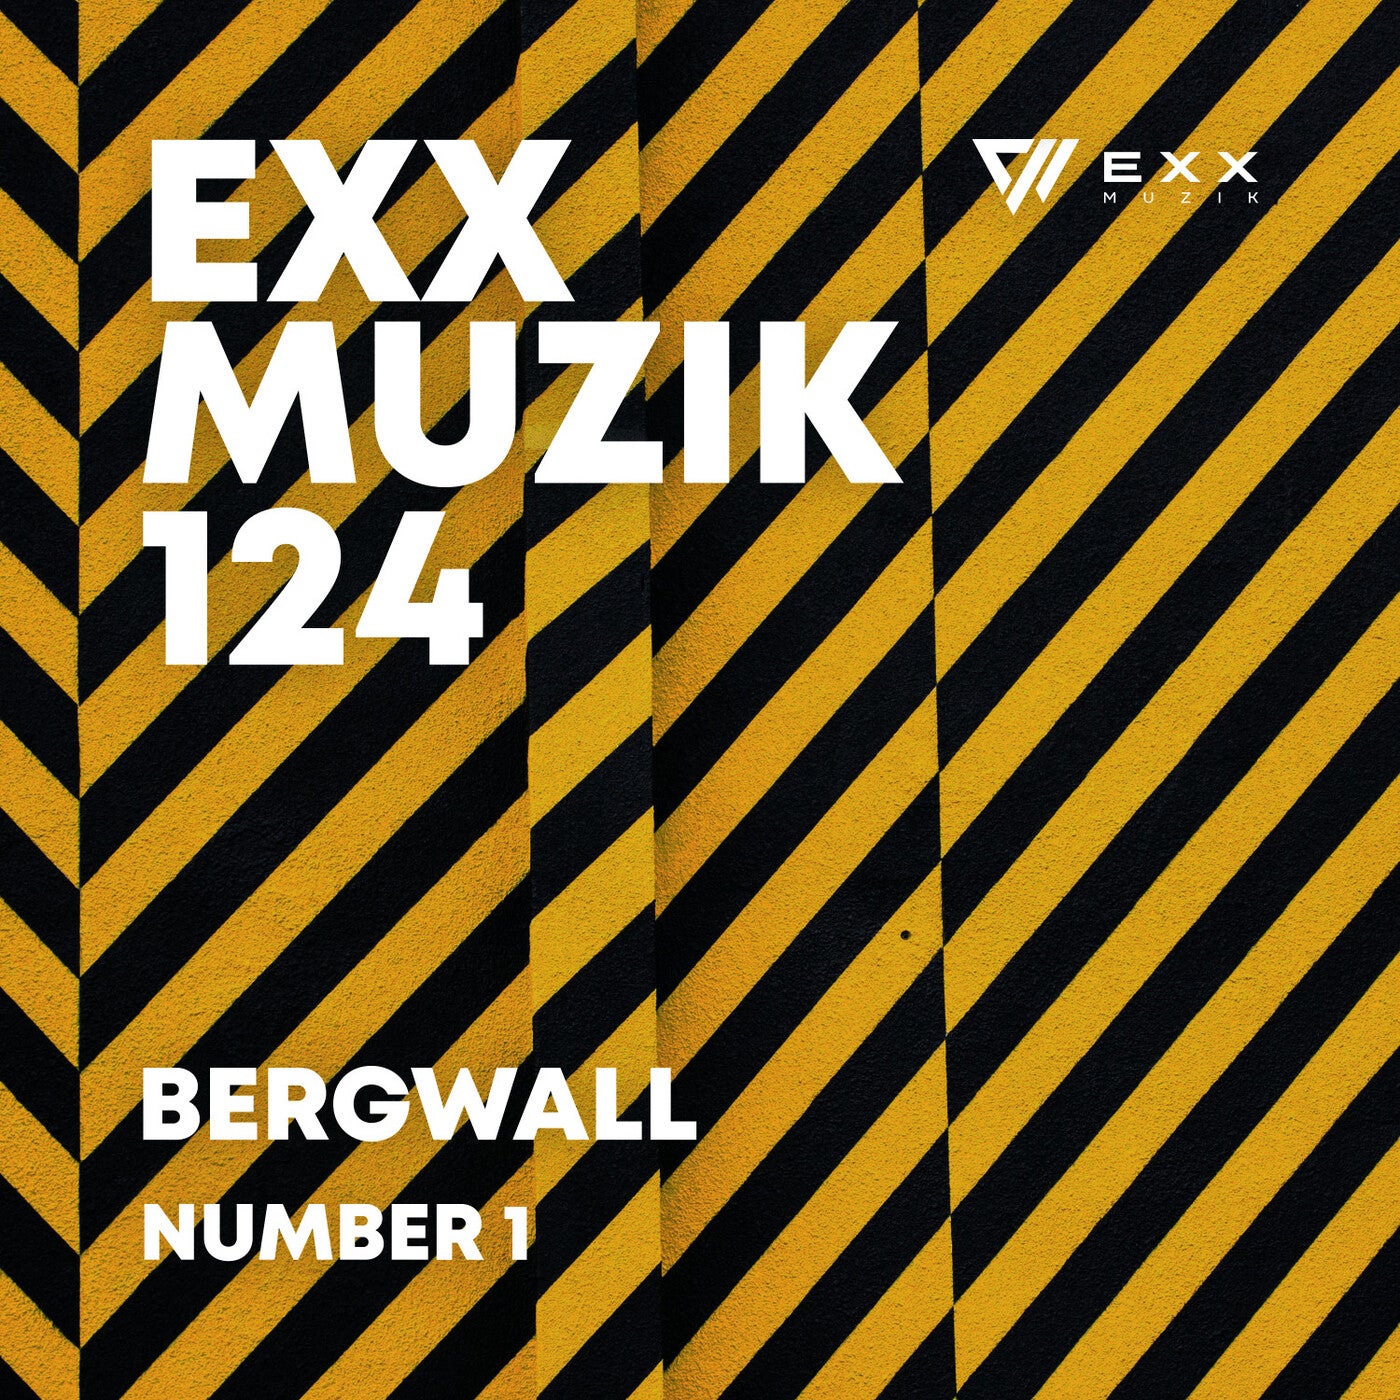 Bergwall music download - Beatport